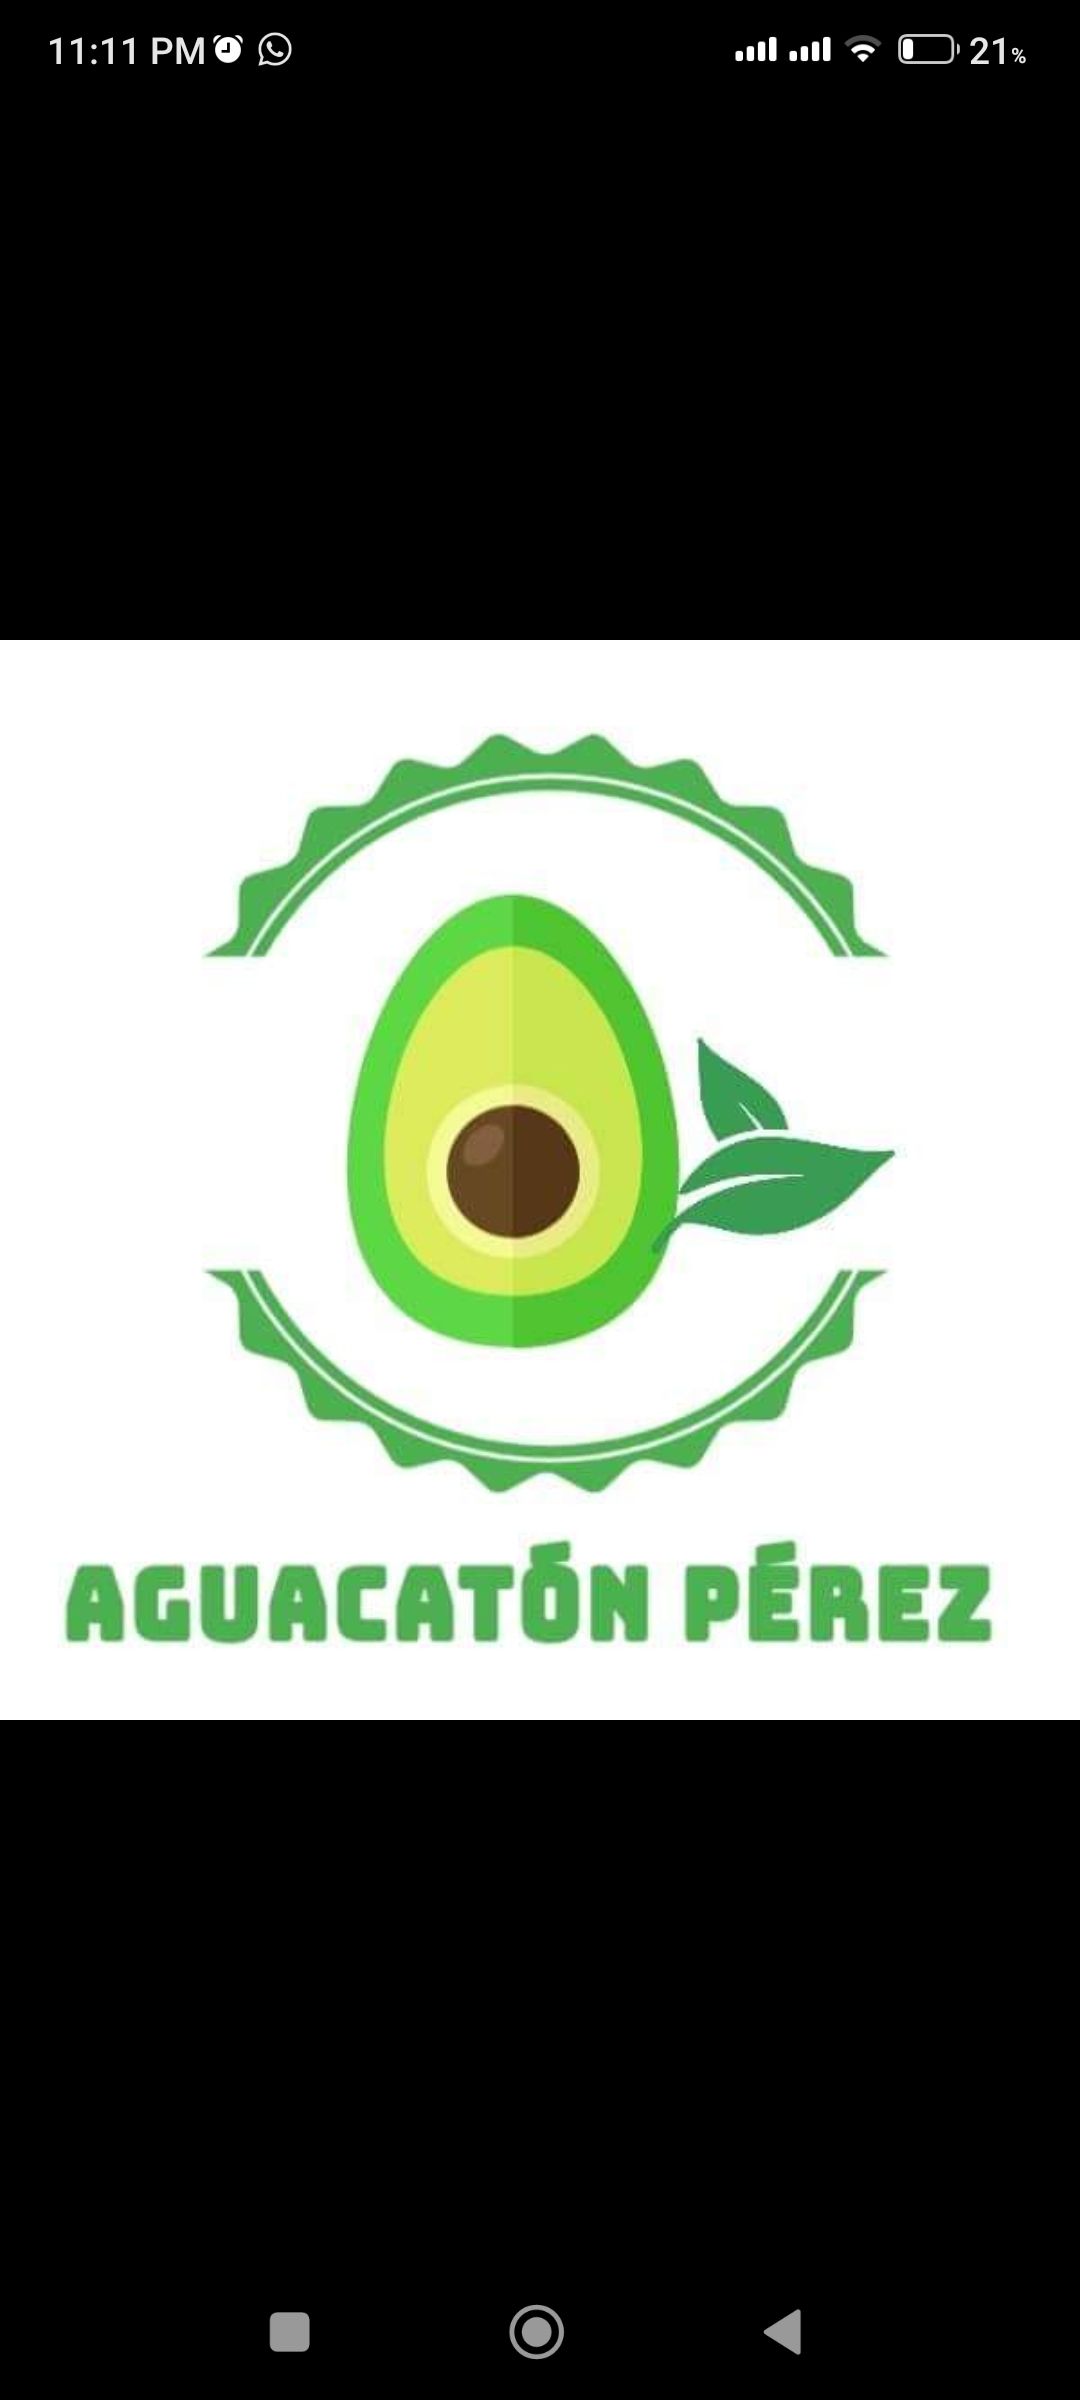 Aguacatón Pérez 